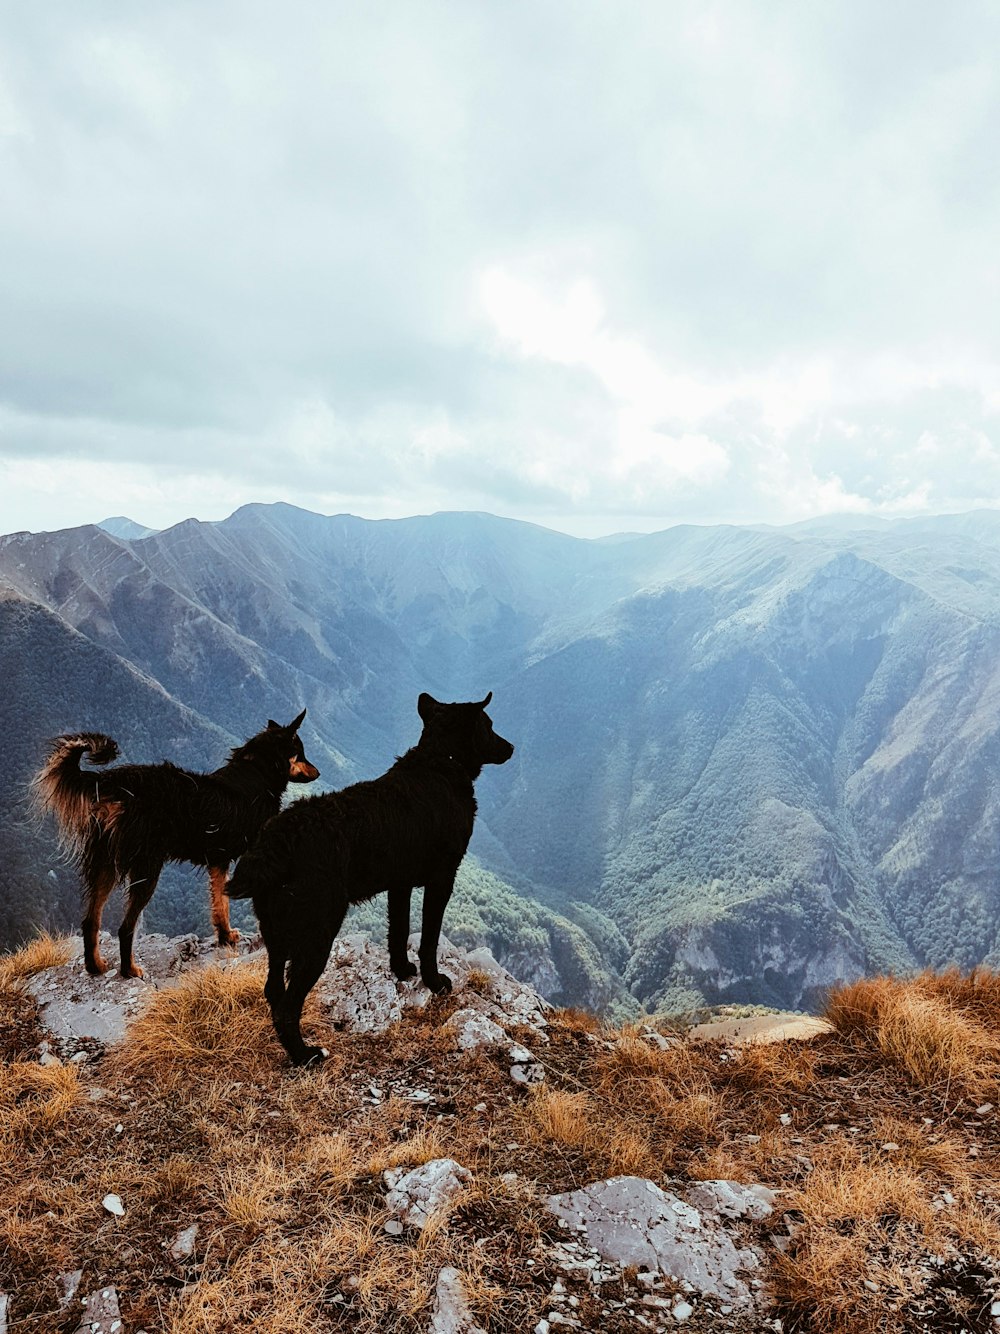 deux chiens noirs debout sur la montagne rocheuse